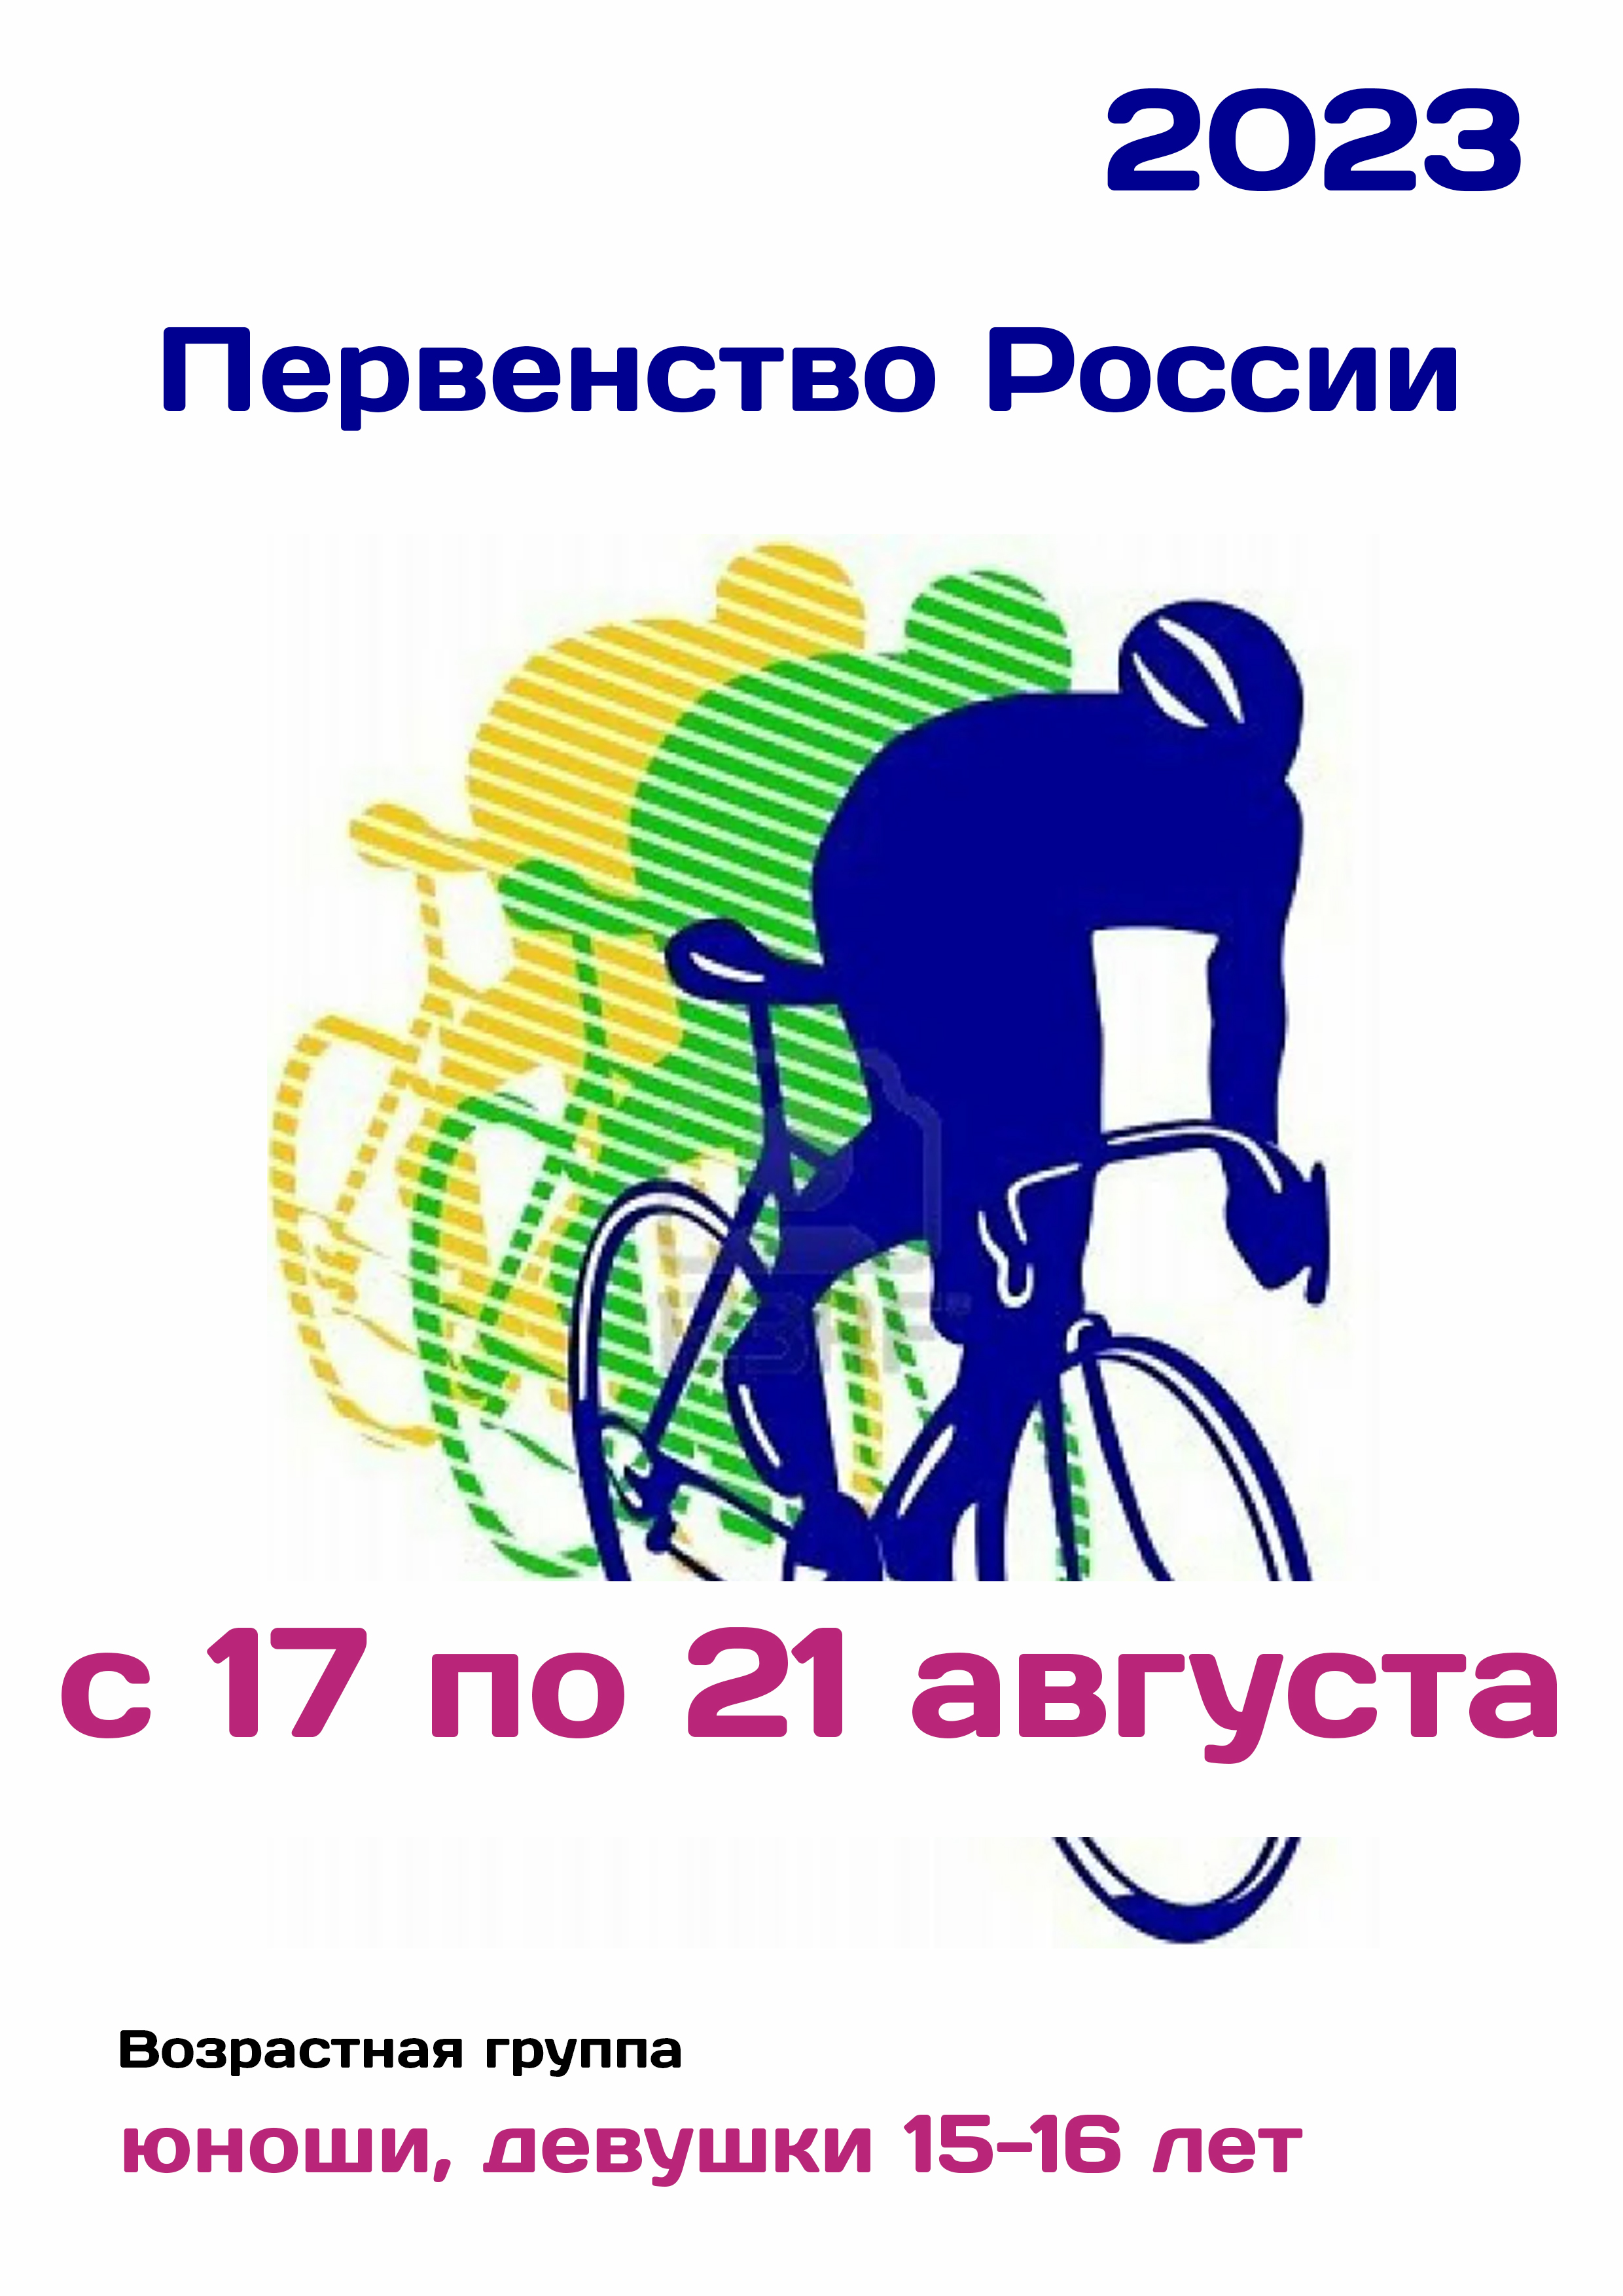 Первенство России по велоспорту 17  ខែសីហា
 2023  នៅឆ្នាំ
 